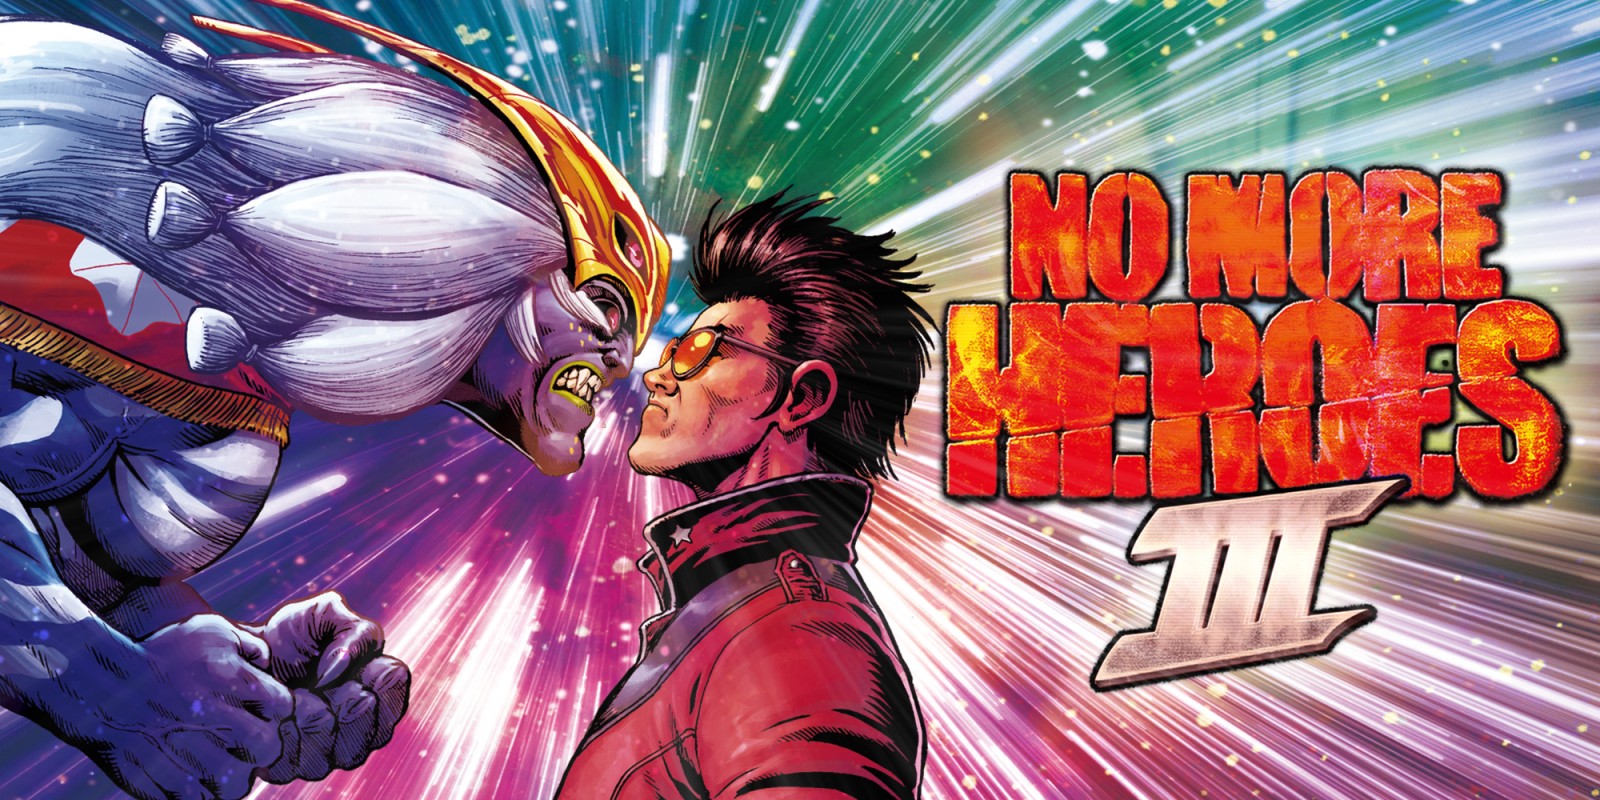 No More Heroes III pojawi się na PC, PlayStation i Xboksie w październiku 